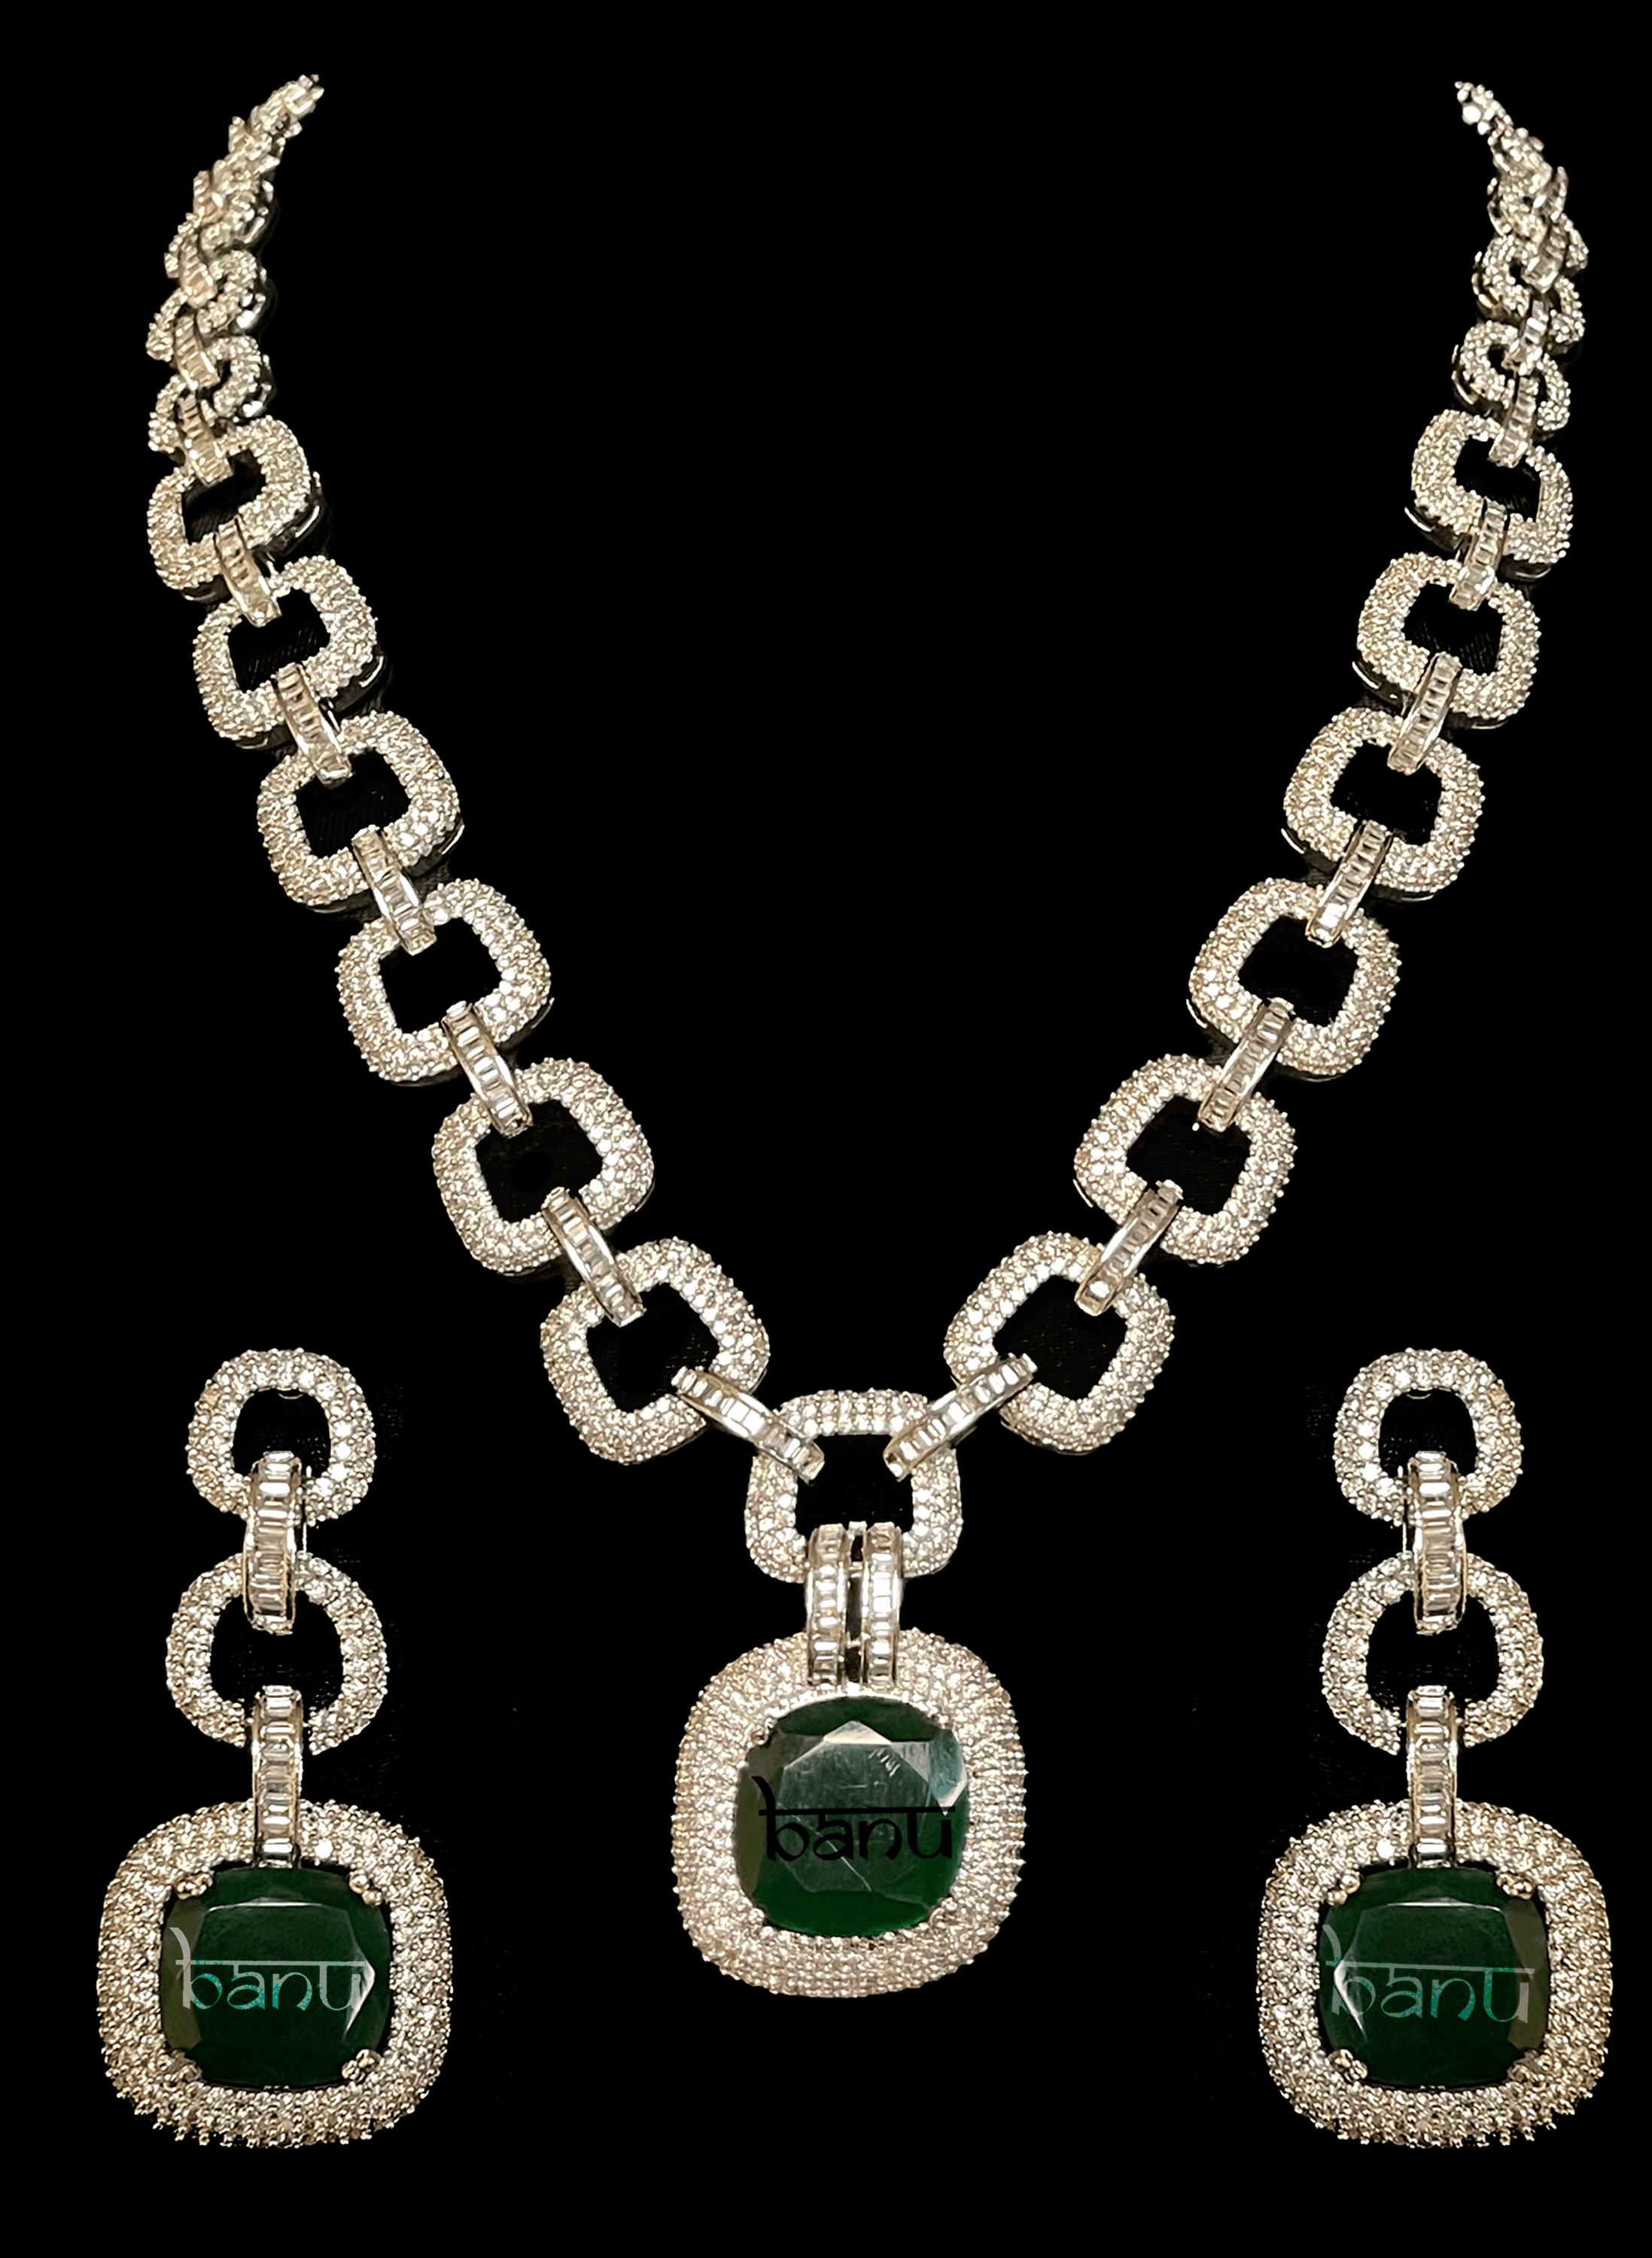 Scarlet - Modern Victorian Inspired Emerald Bridal Set w/ Clear CZ Crystal